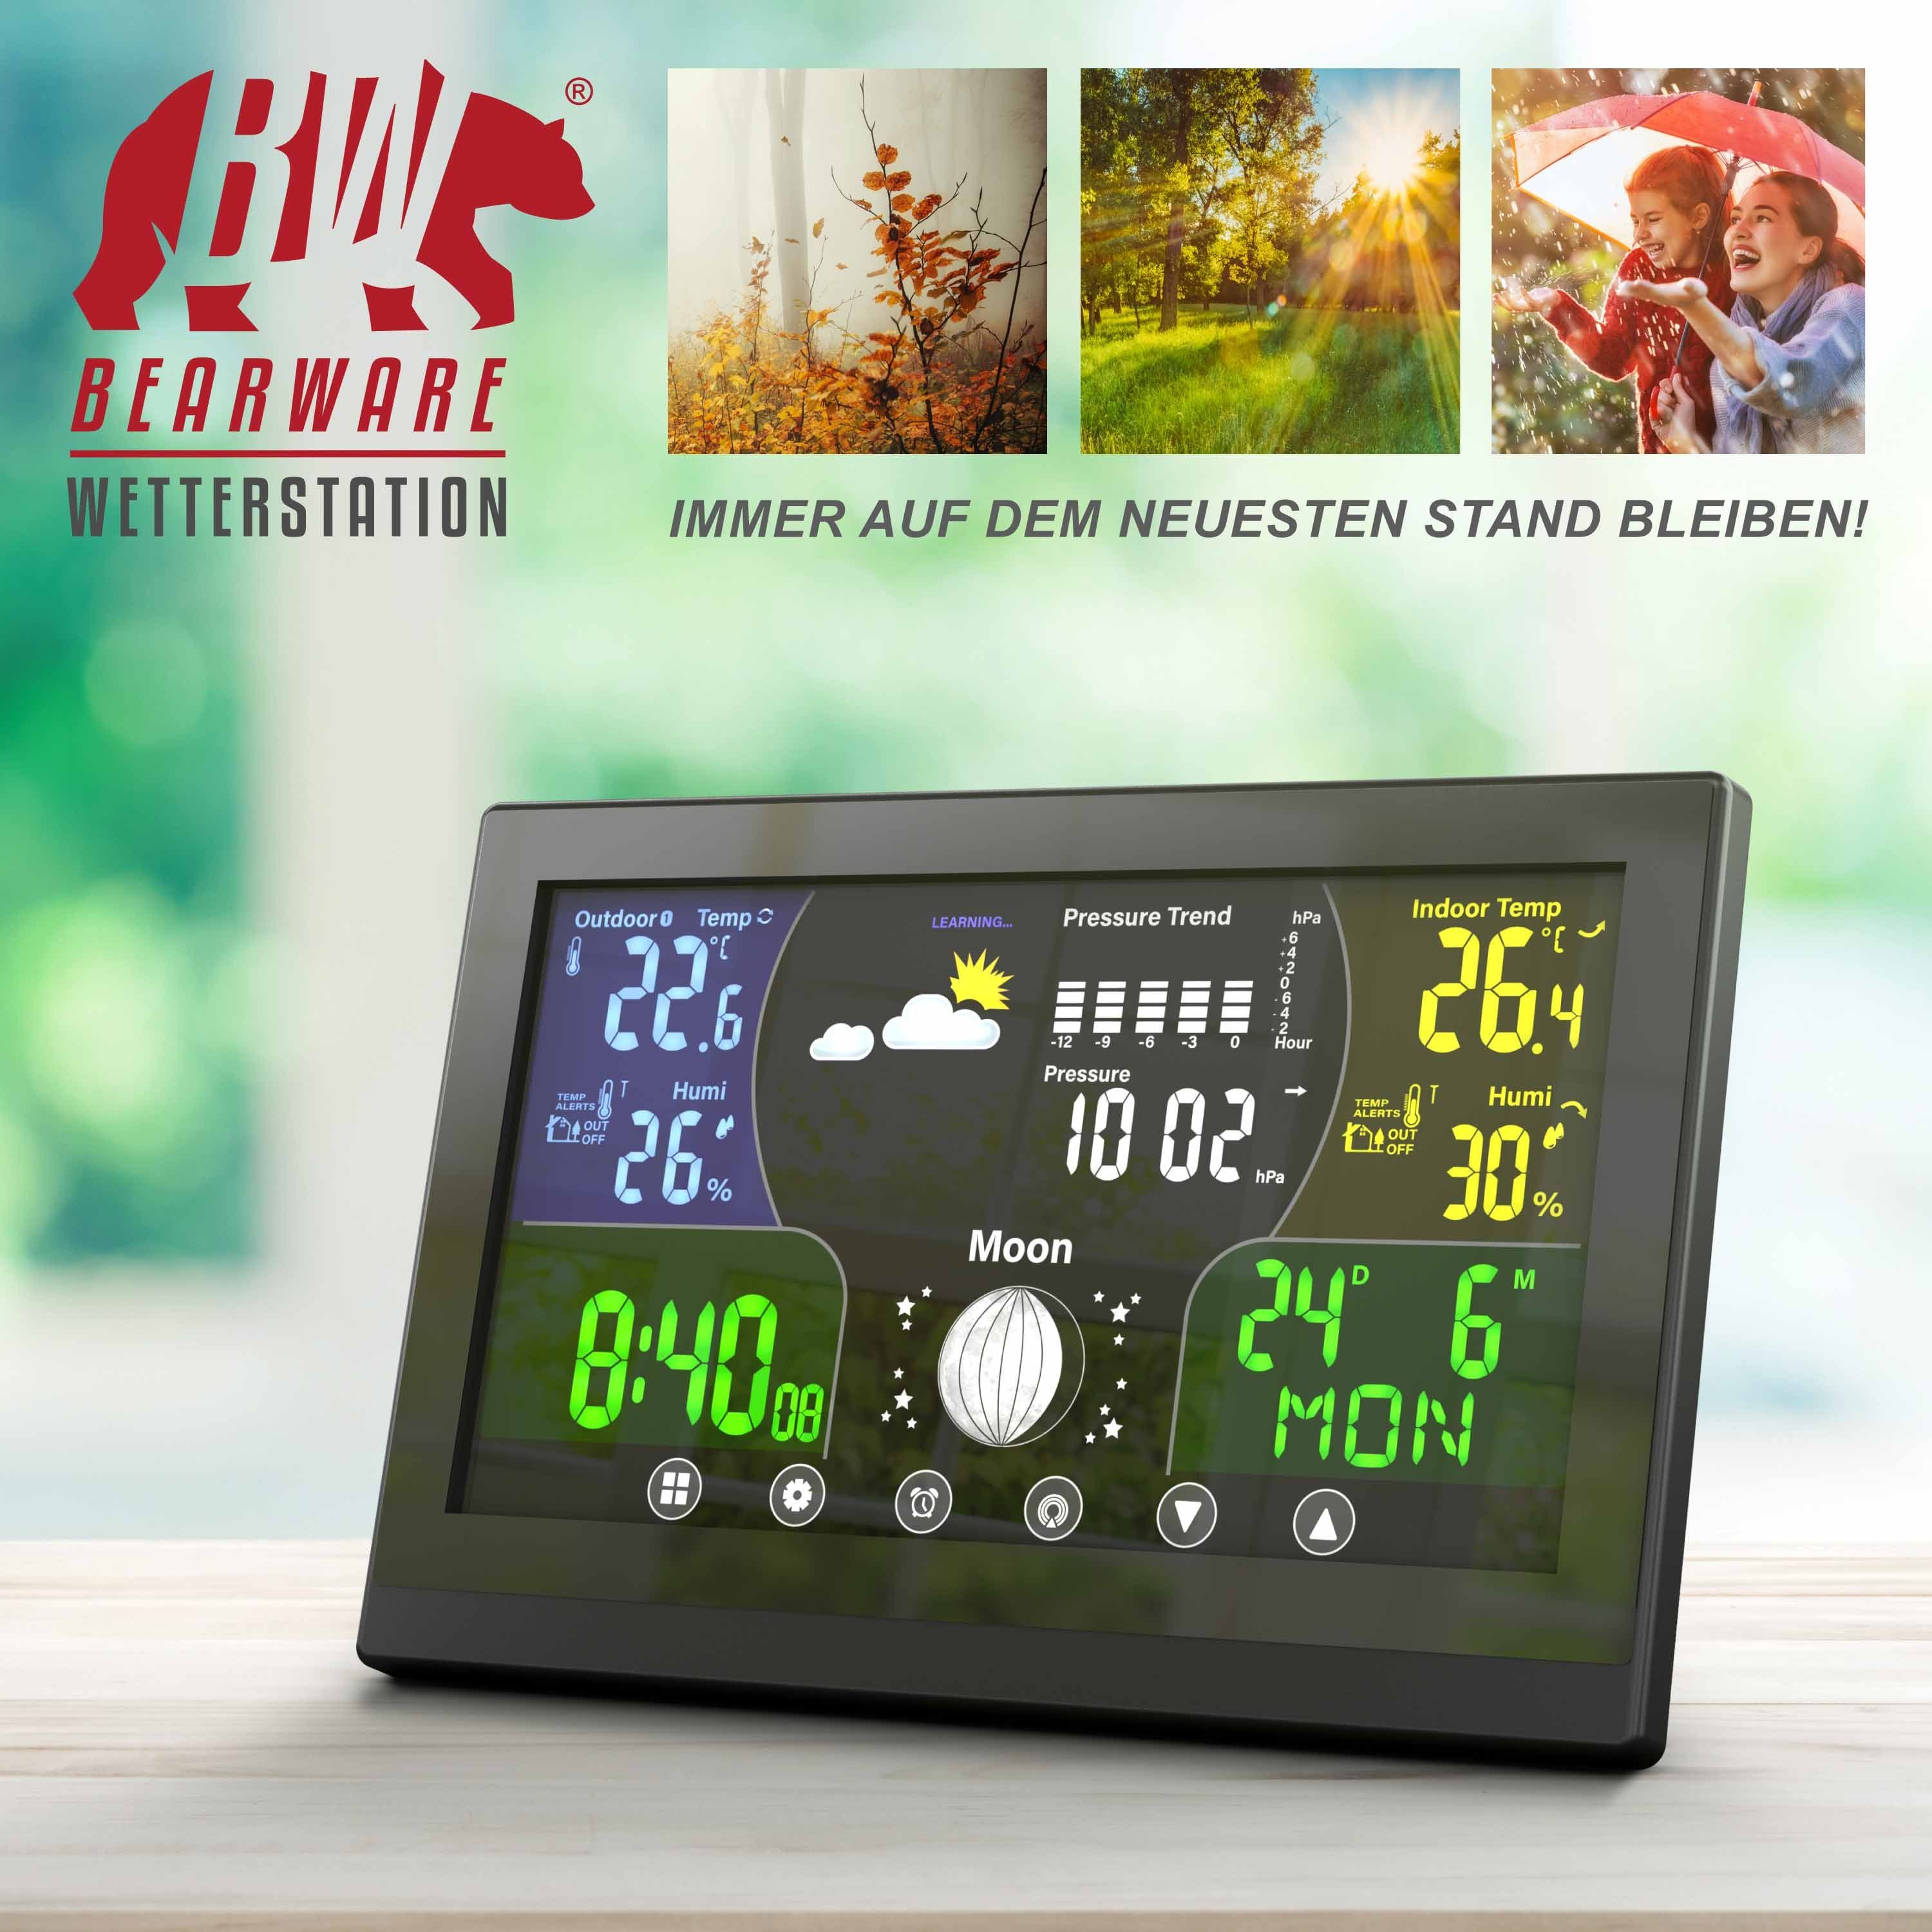 Höhenkorrektur) Farbdisplay Luftdruck (mit Außensensor, mit LCD / BEARWARE Wetterstation mit